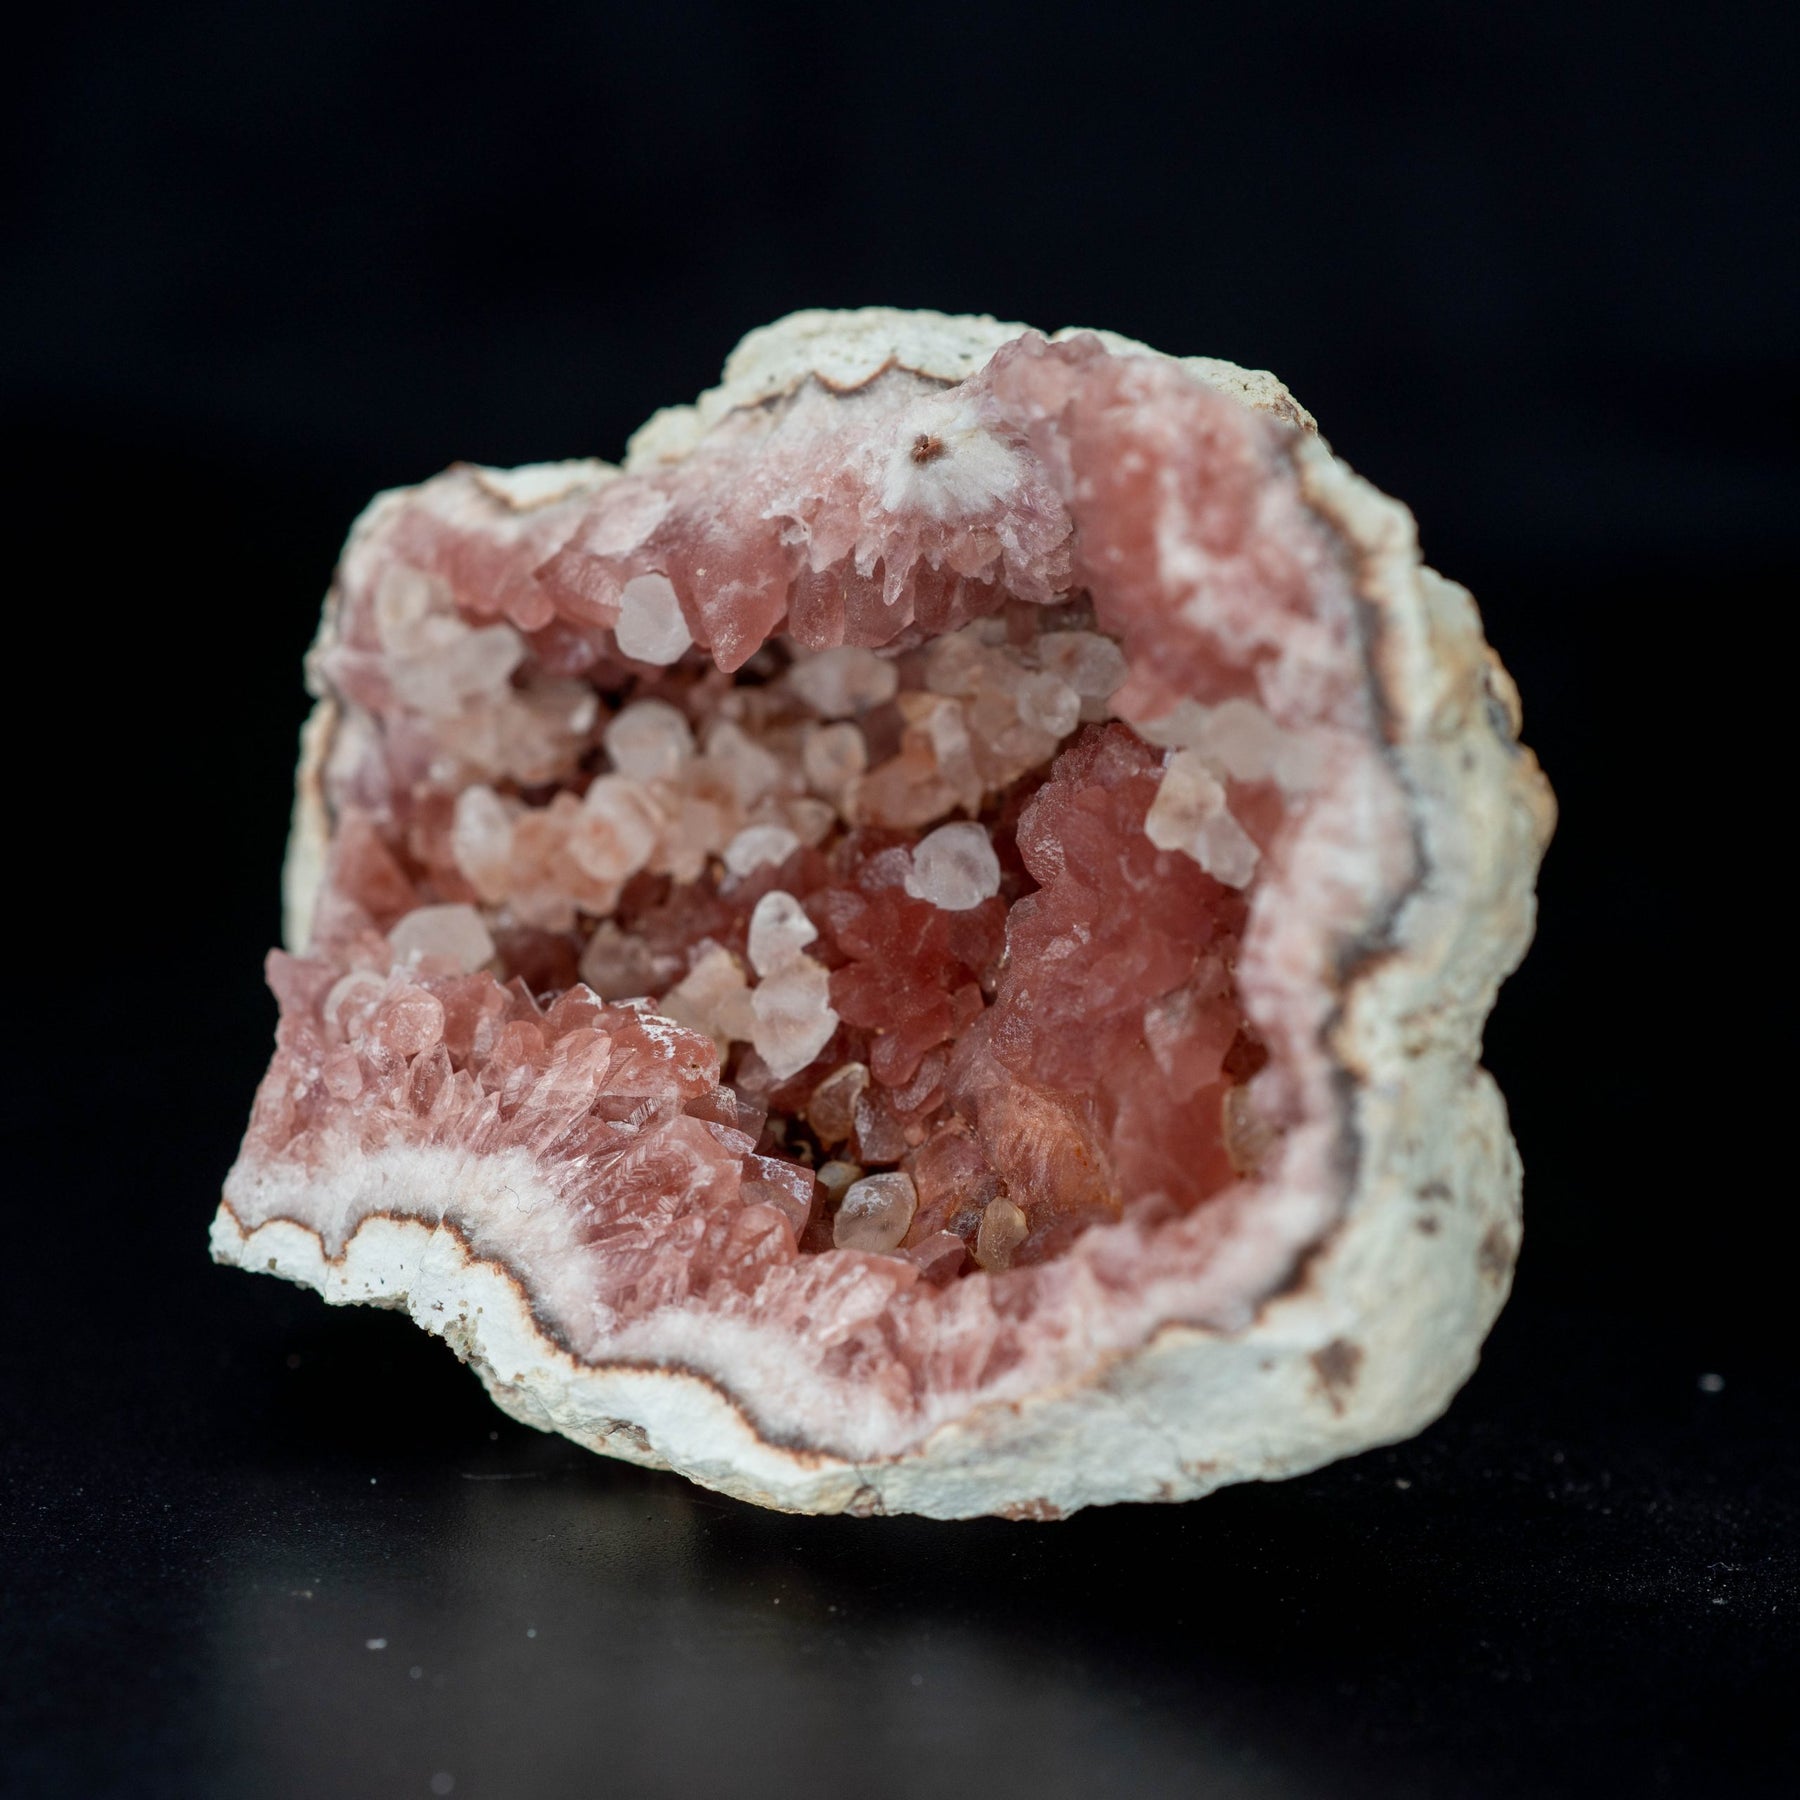 Pink Amethyst Geode 90g #2